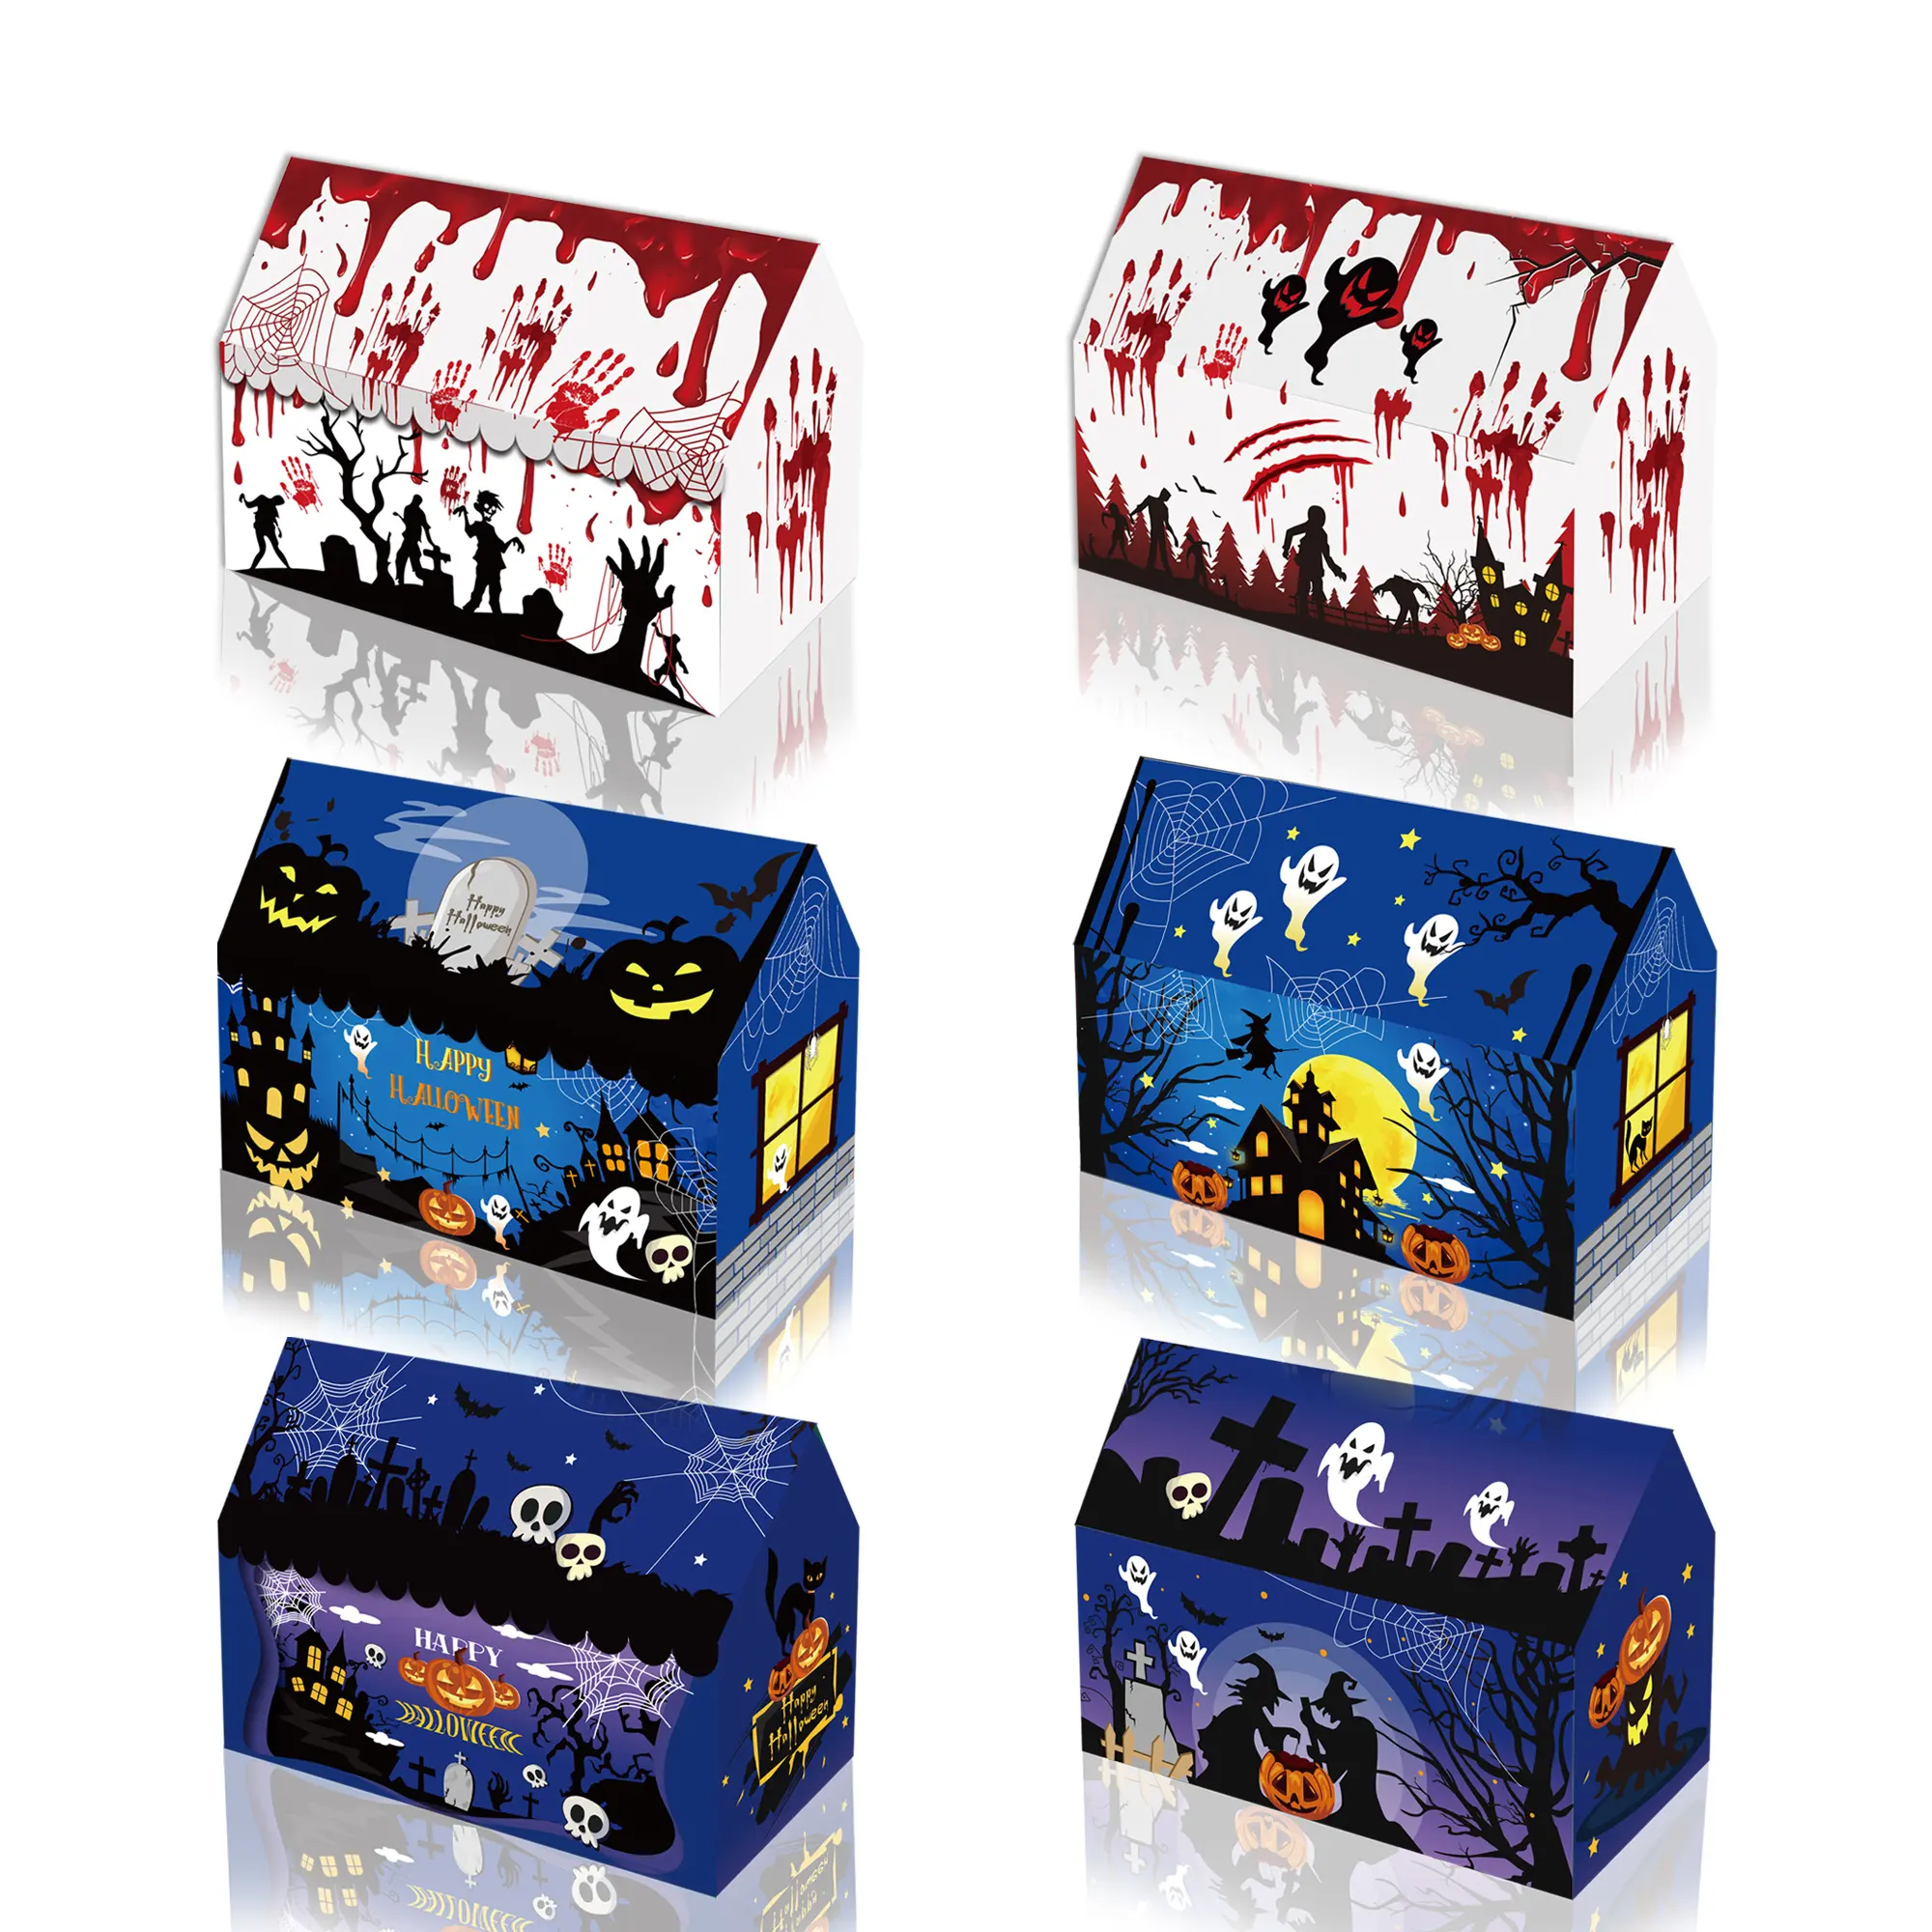 Xindeli KZ063 cadılar bayramı temalı kağit kutu kek hediye gıda ambalaj kutuları için cadılar bayramı çocuk hediye parti malzemeleri